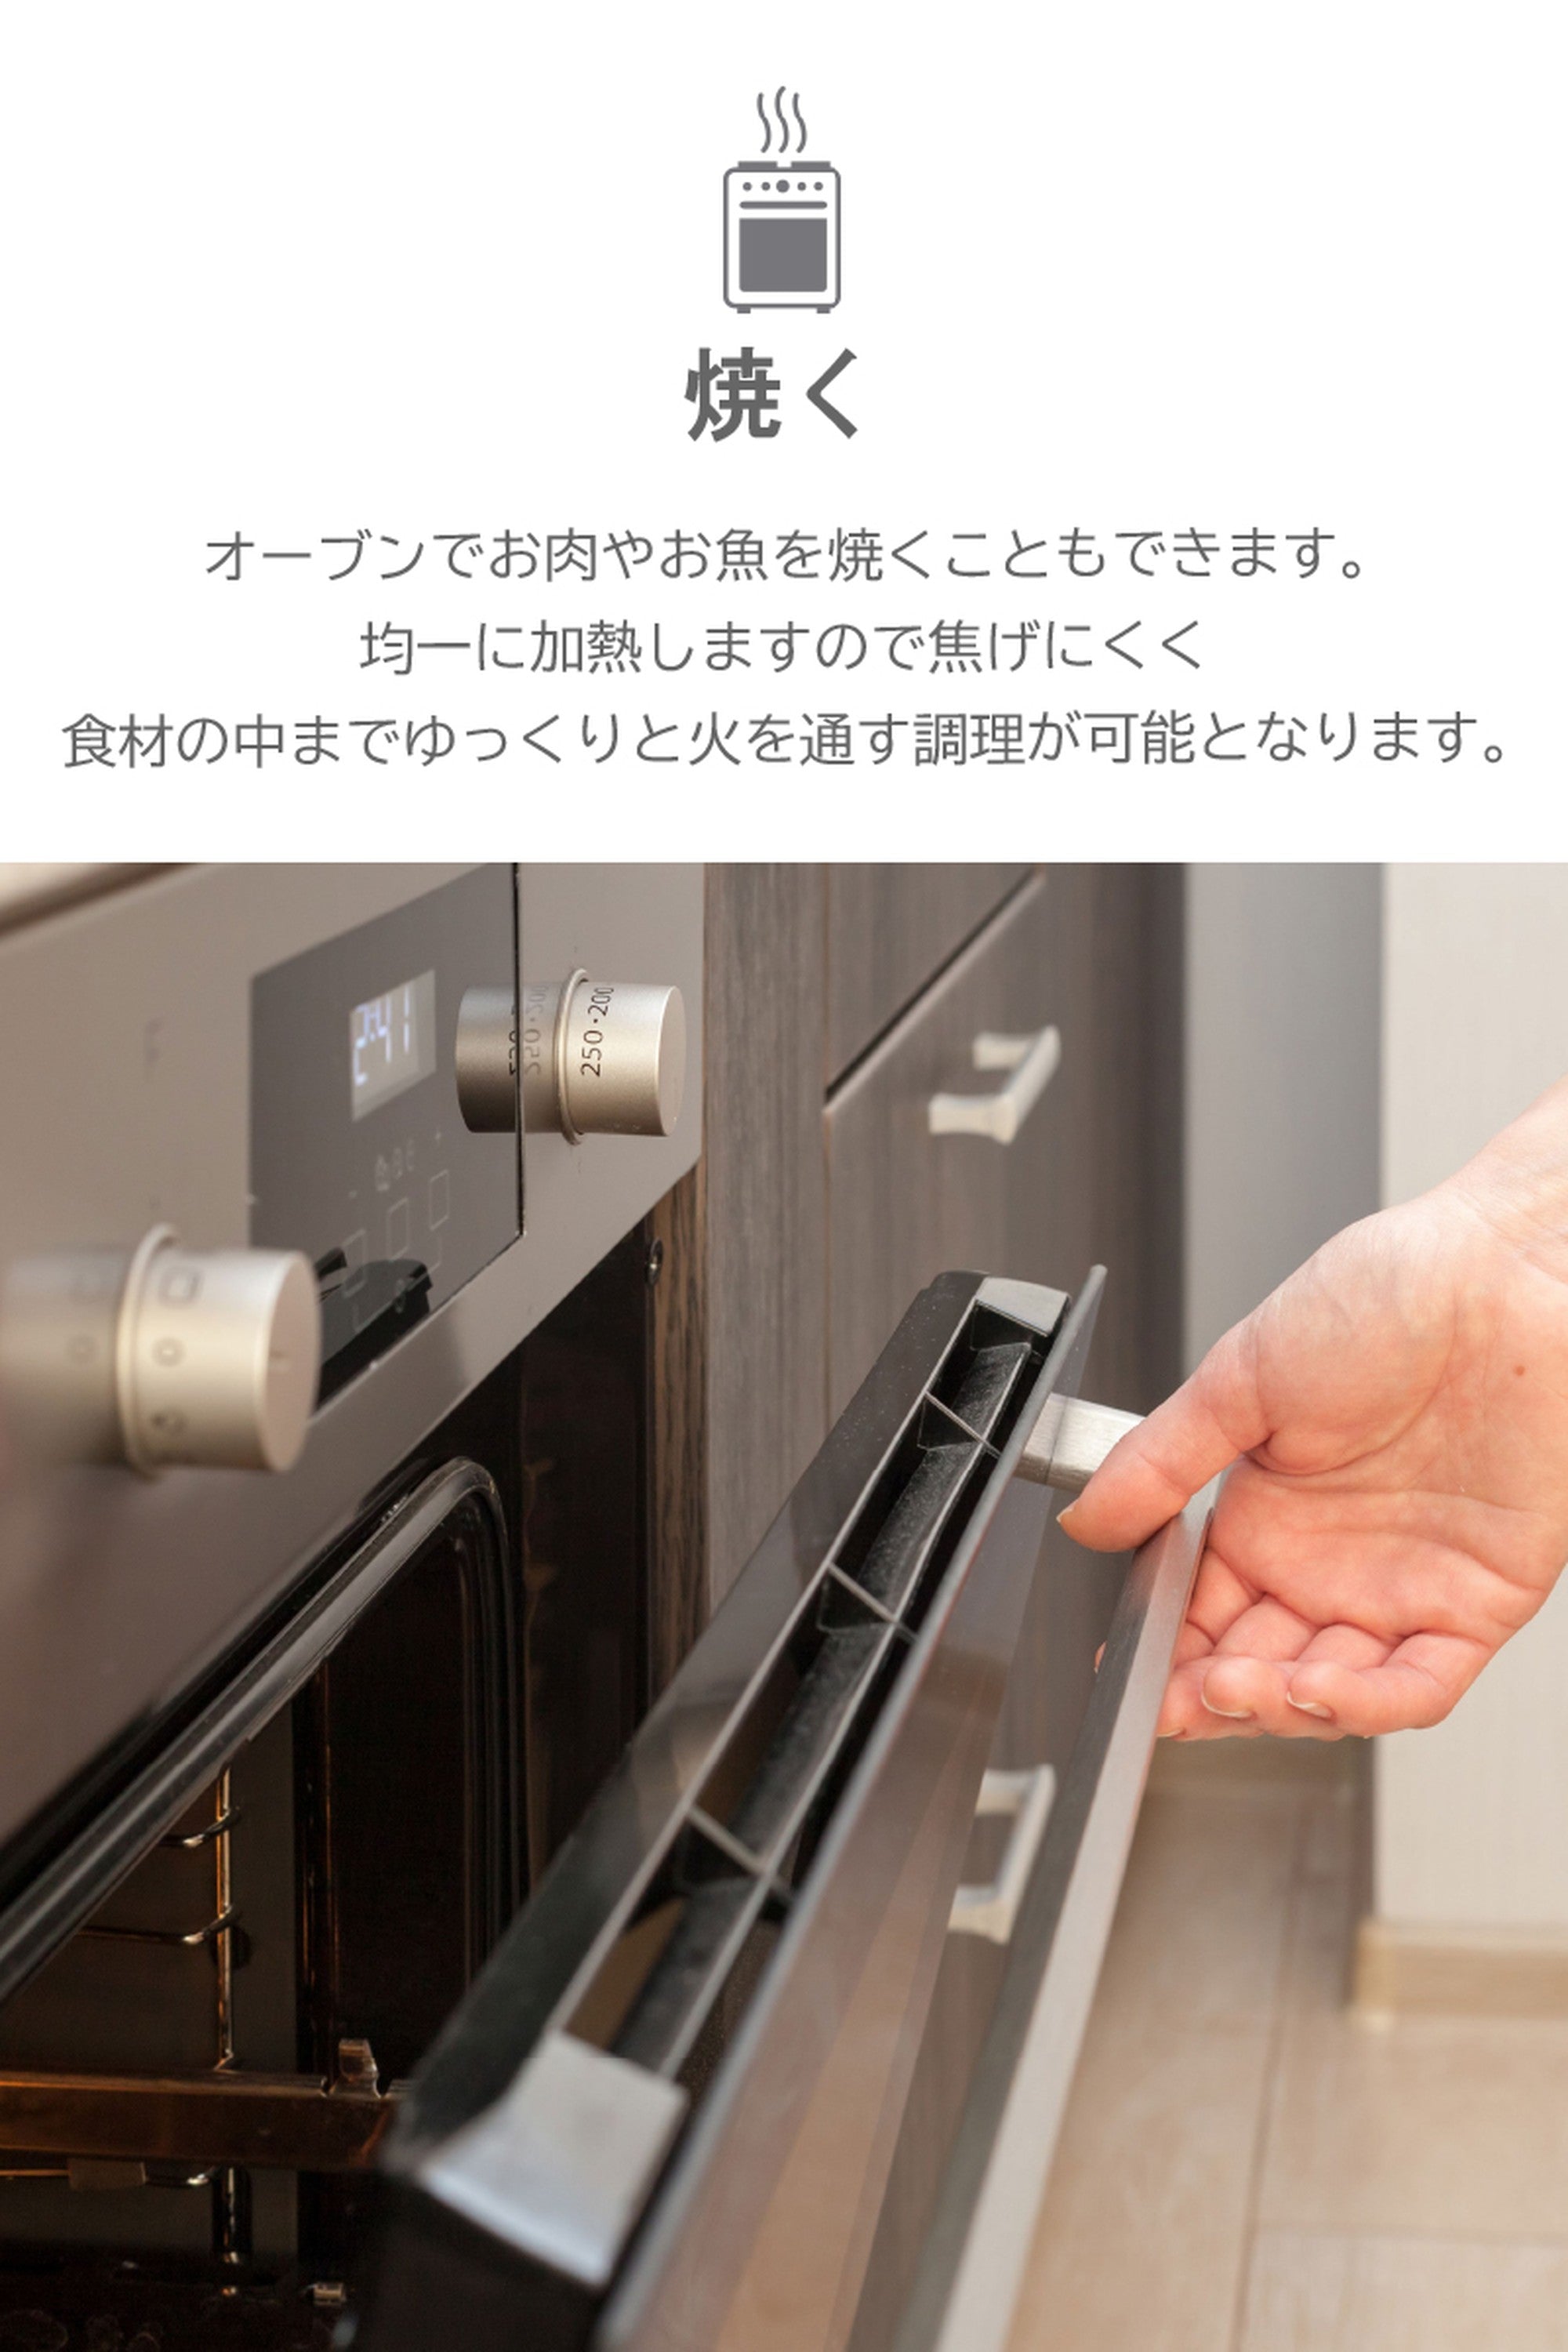 【2個セット】スタッシャー シリコンバッグ stasher 日本正規品 サンドイッチ Mサイズ 30色